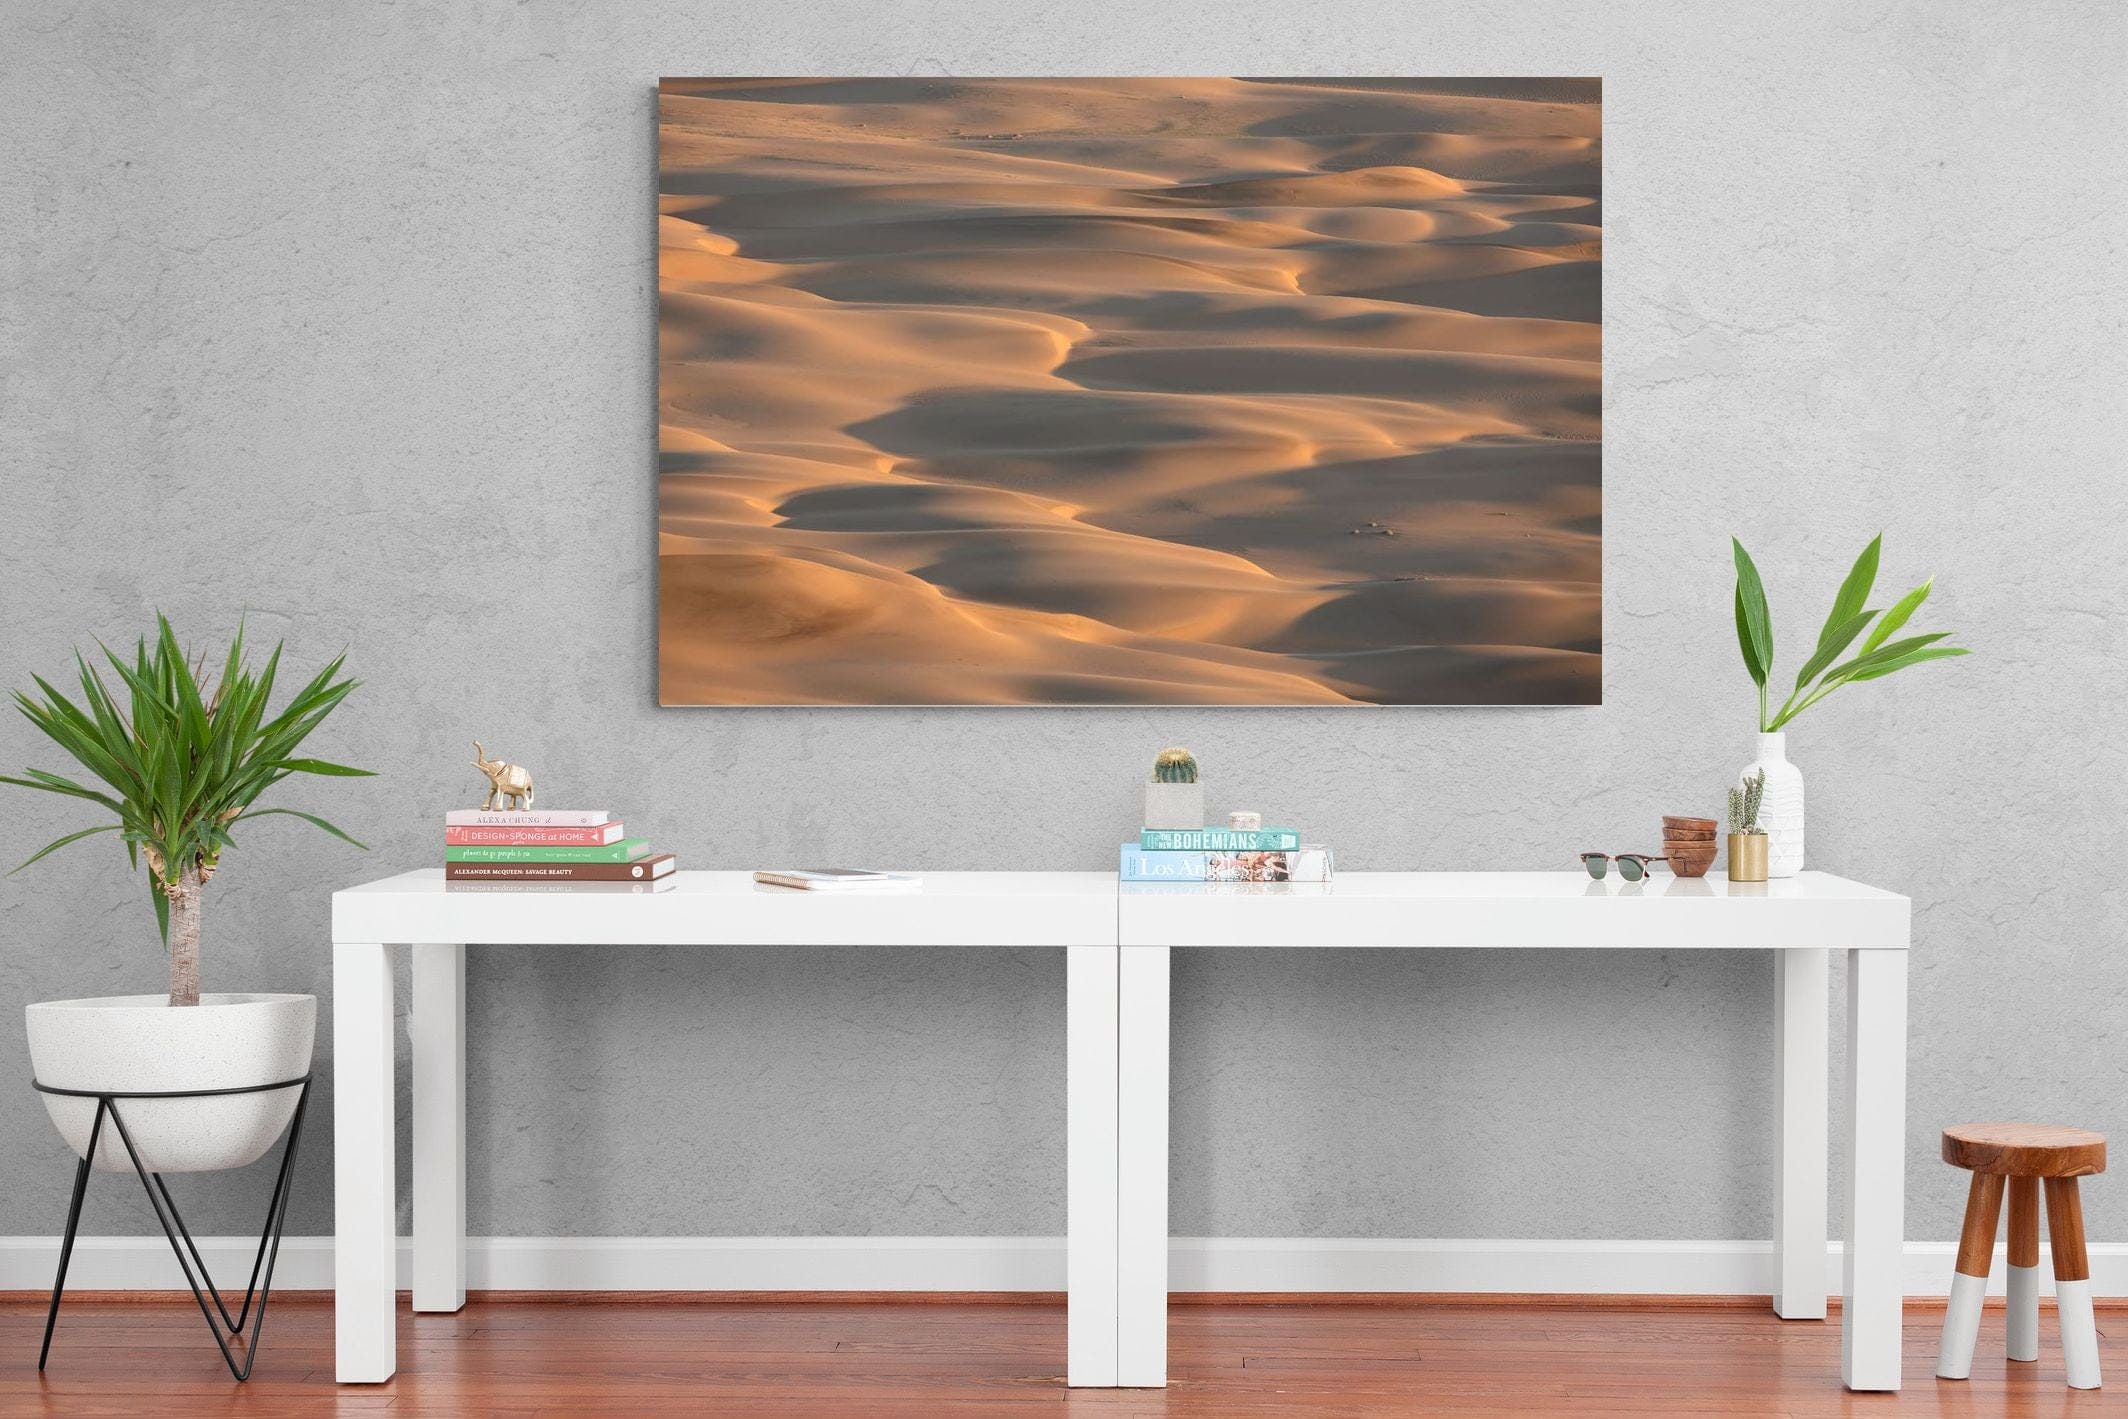 Sand dunes against sky For sale as Framed Prints, Photos, Wall Art